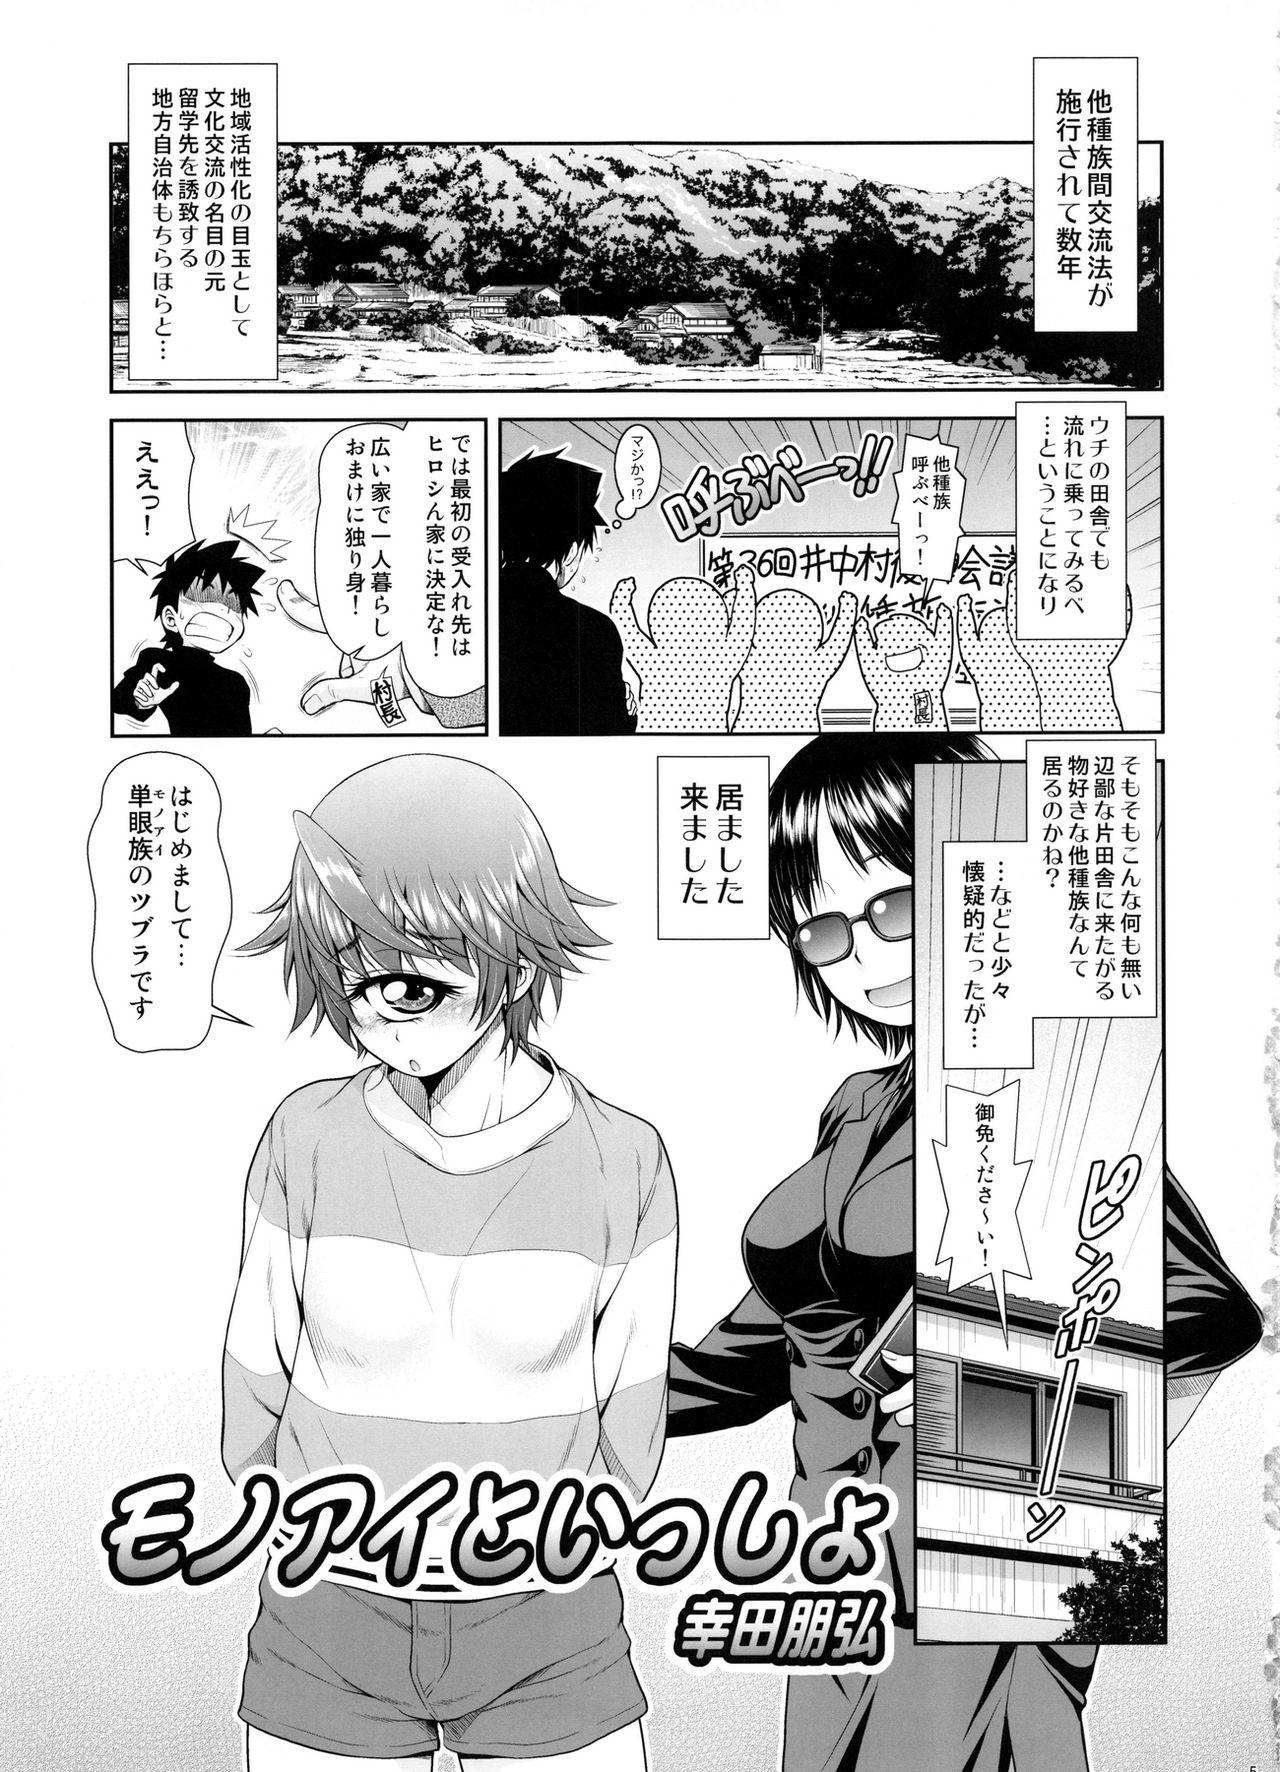 Adolescente Monmusu Biyori - Monster musume no iru nichijou Adolescente - Page 4